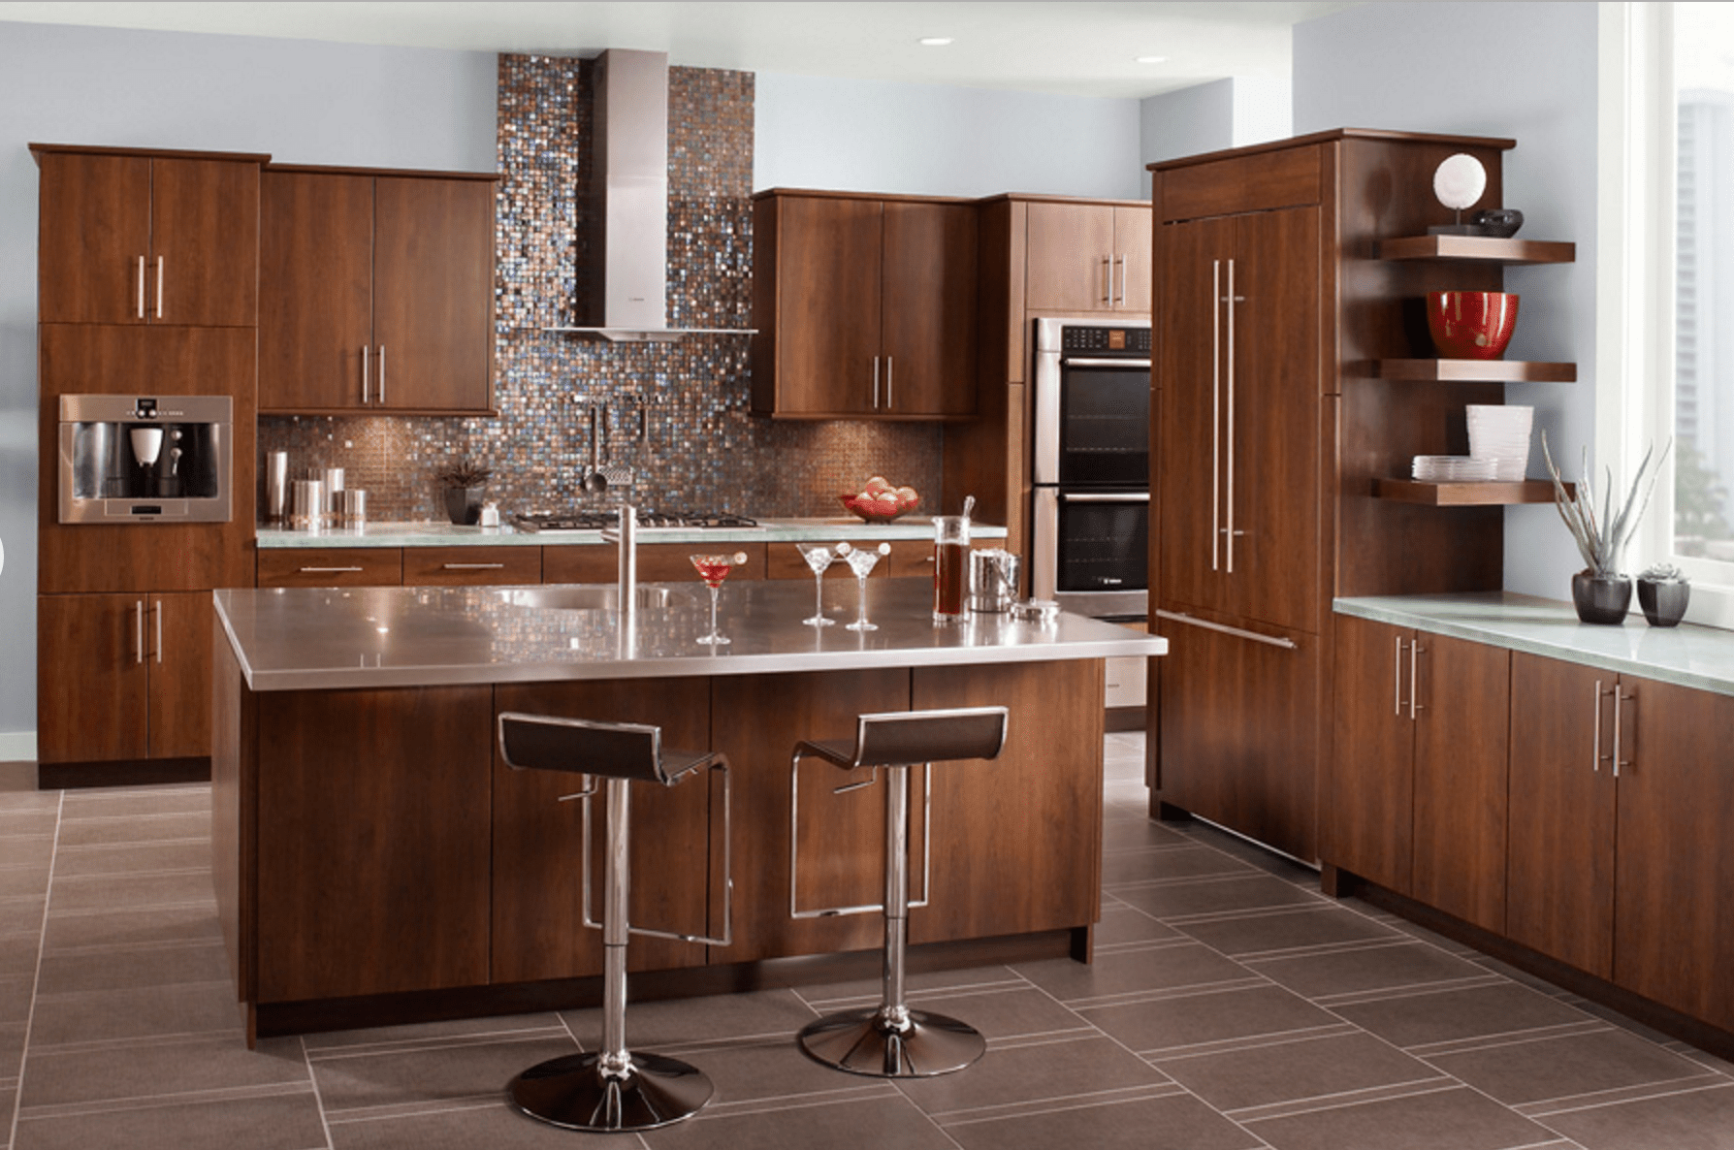 5 Inspiring Gray Kitchen Design Ideas - brown and grey kitchen